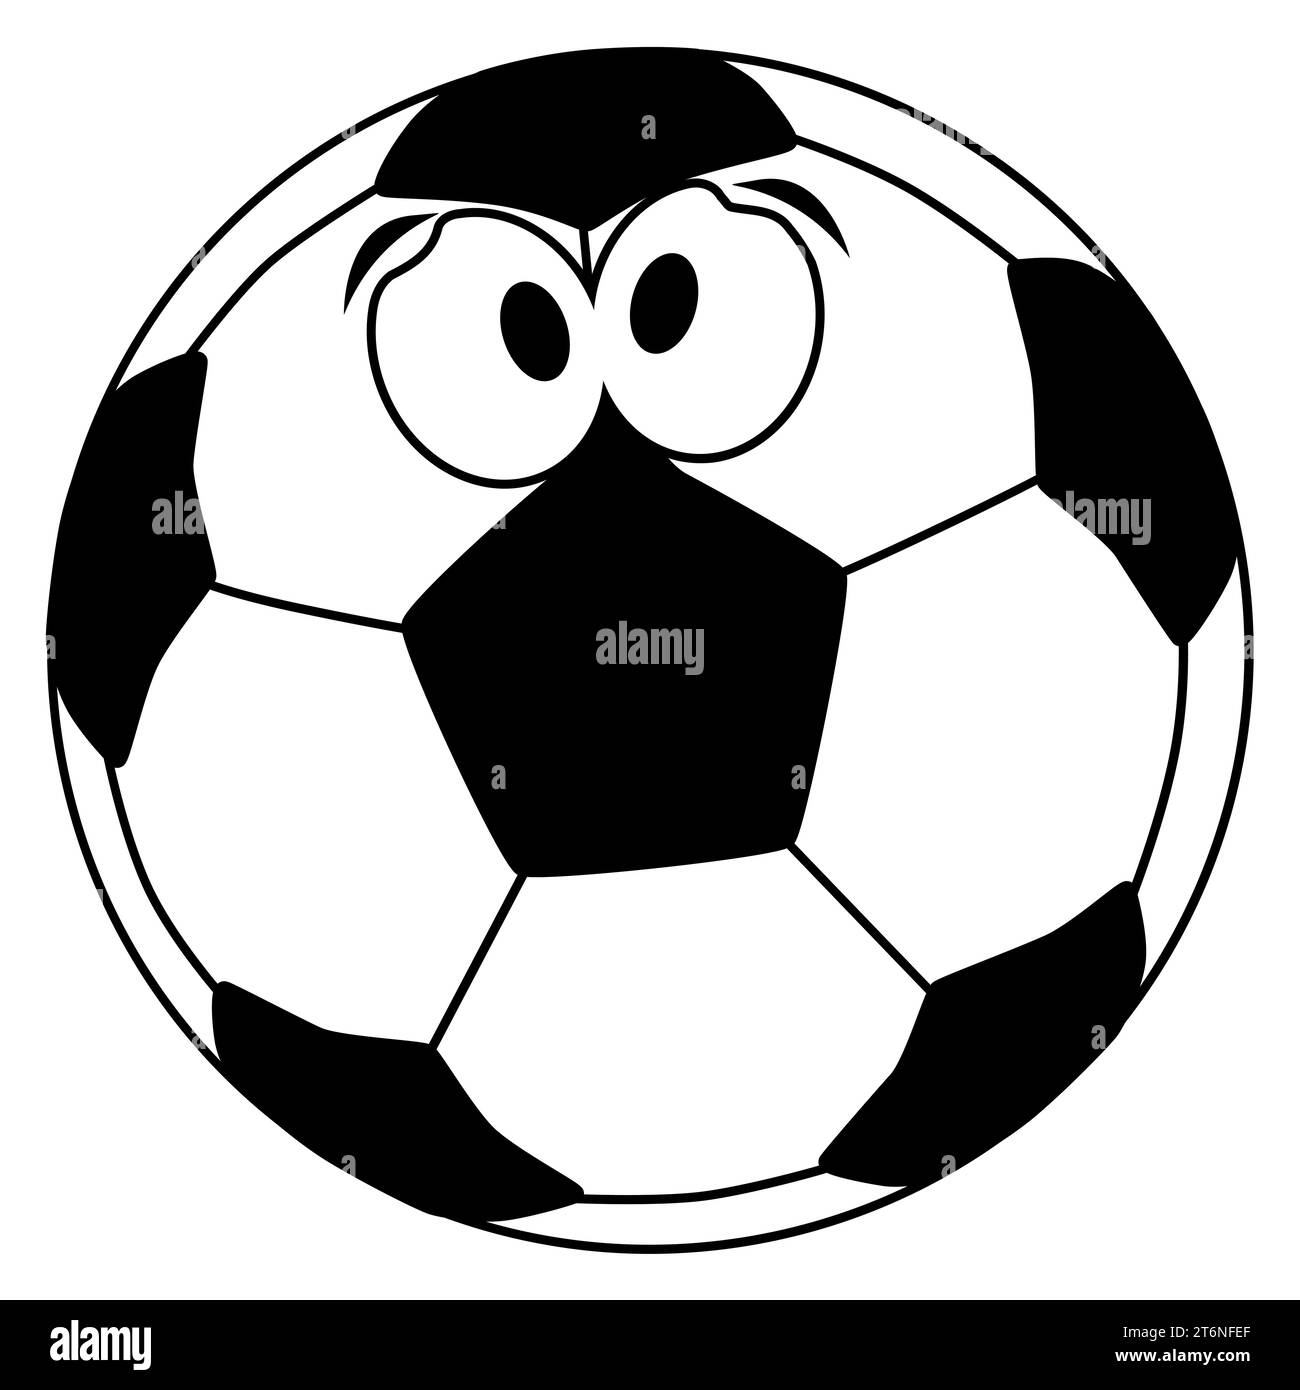 Un visage de blague de football de style dessin animé sur un football isolé sur un fond blanc. Banque D'Images